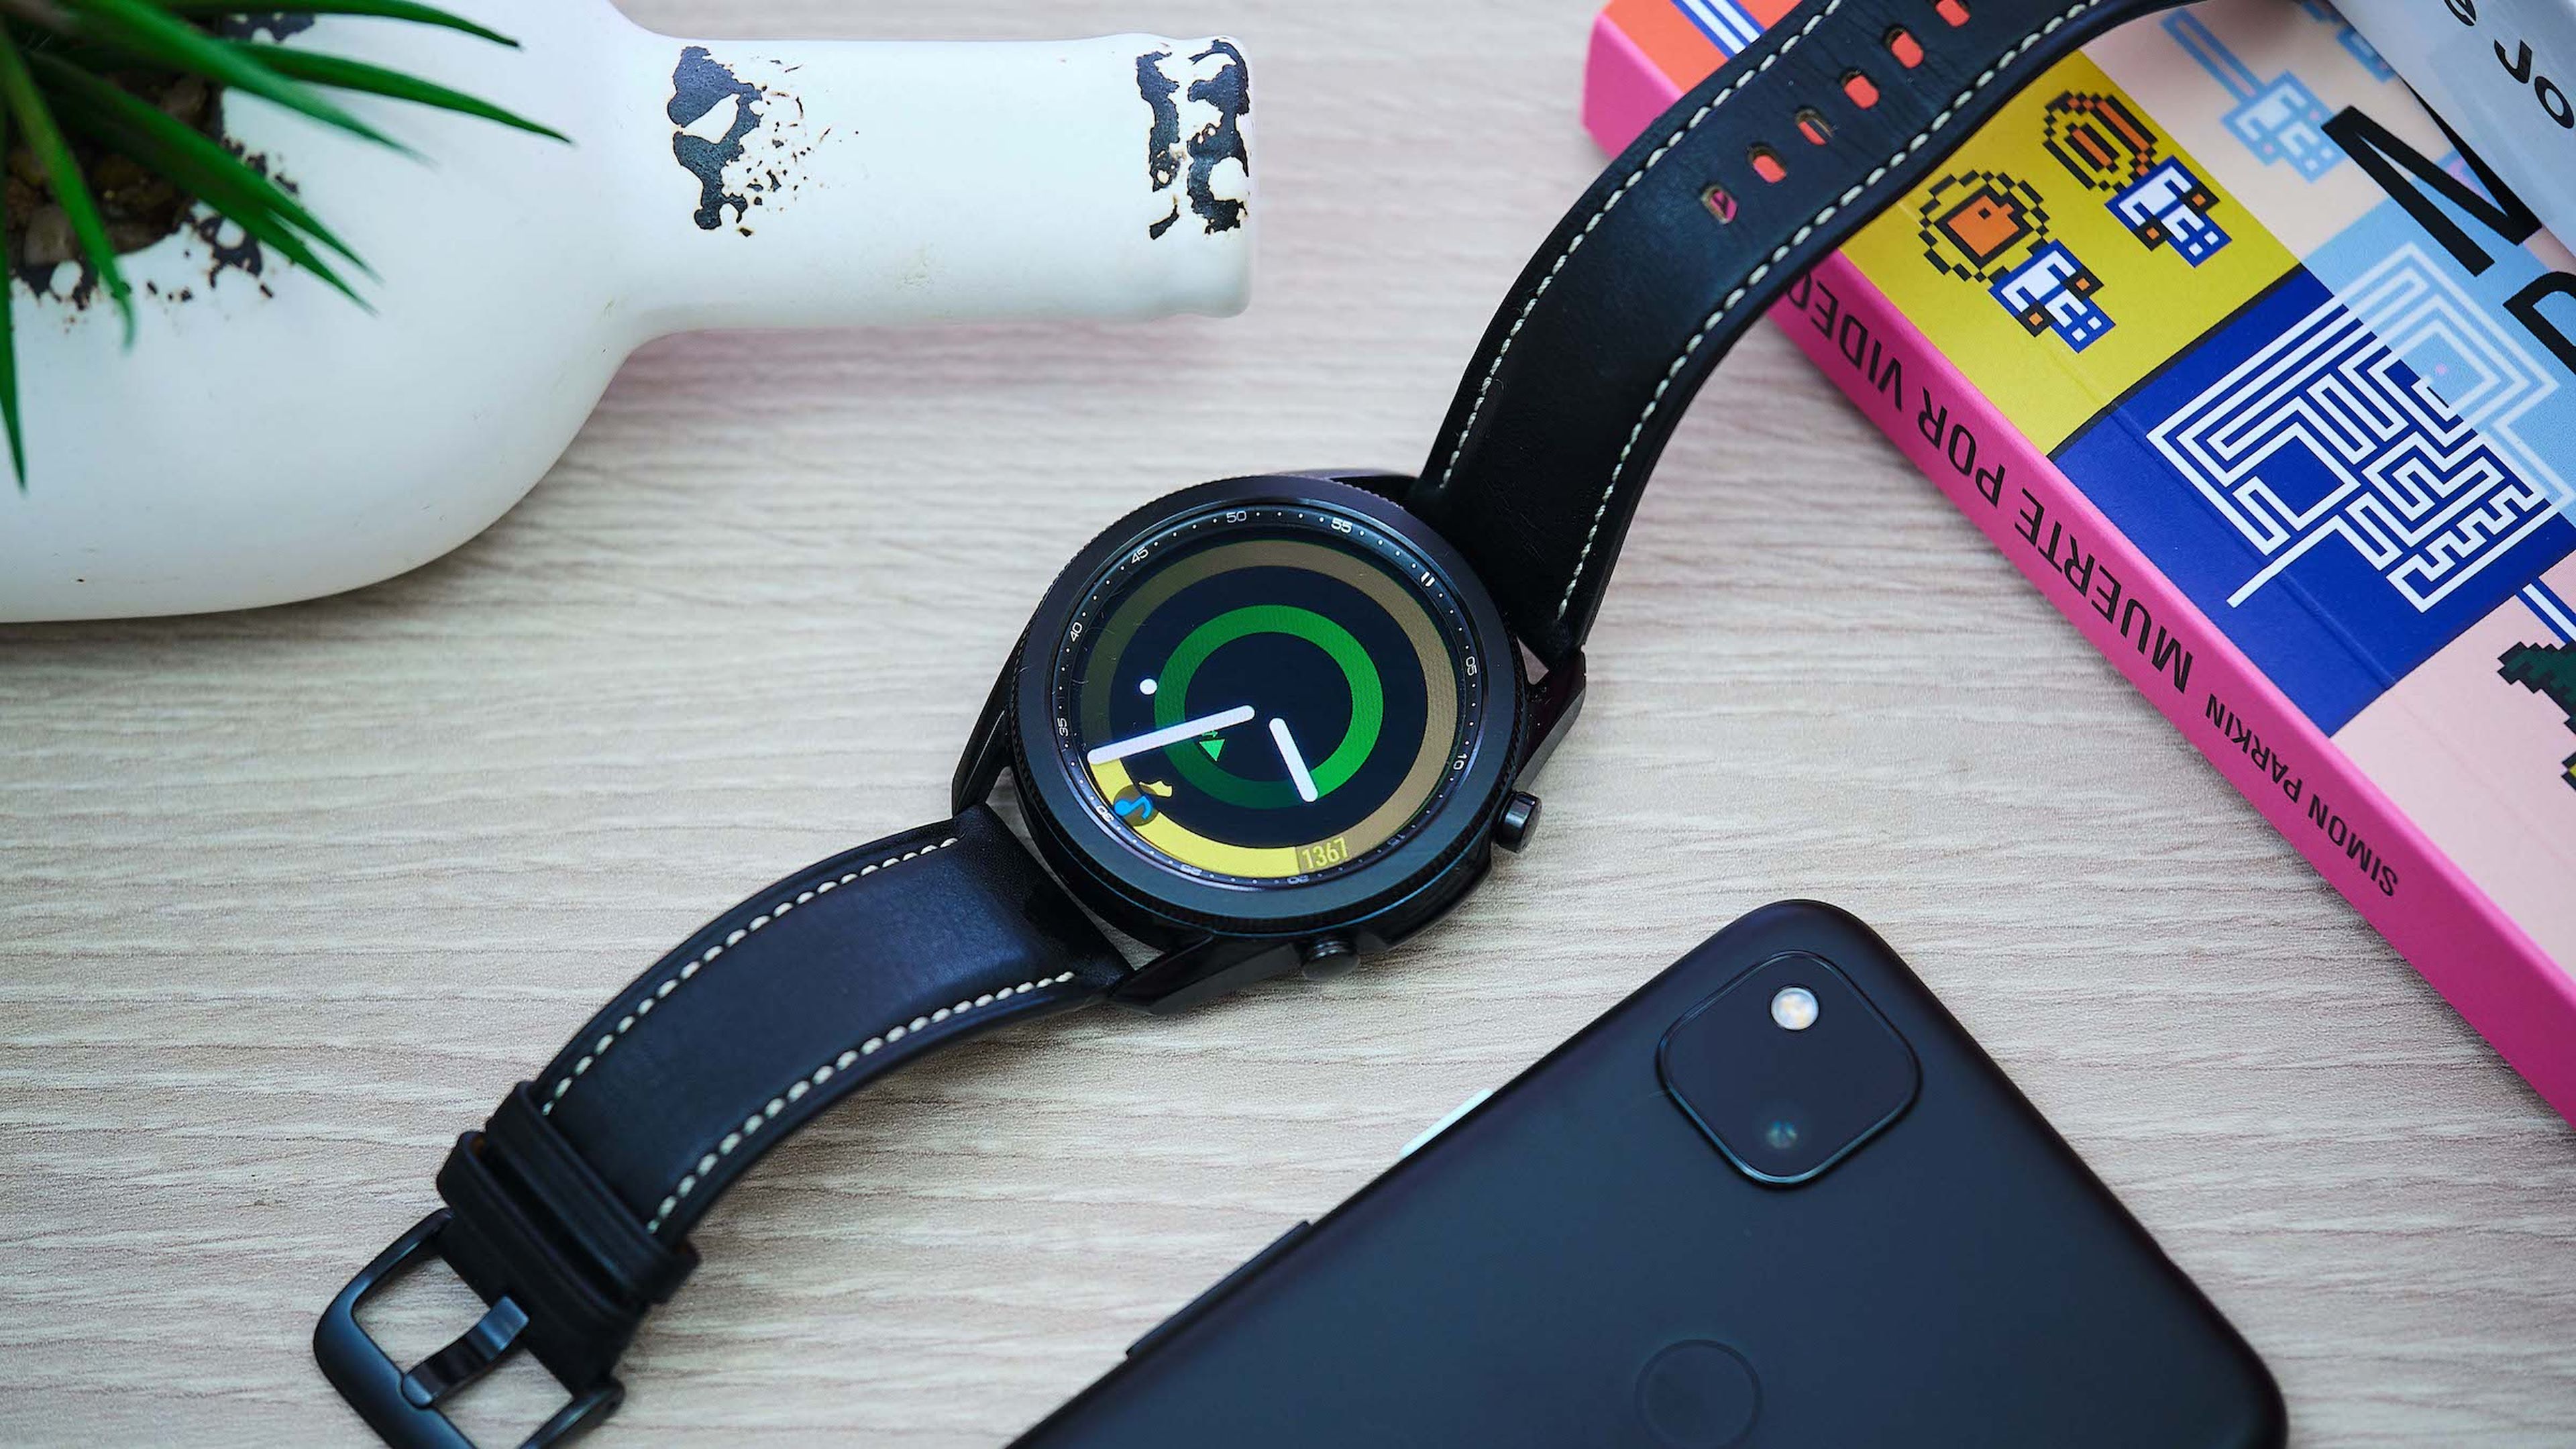 Análisis Samsung Galaxy Watch 3